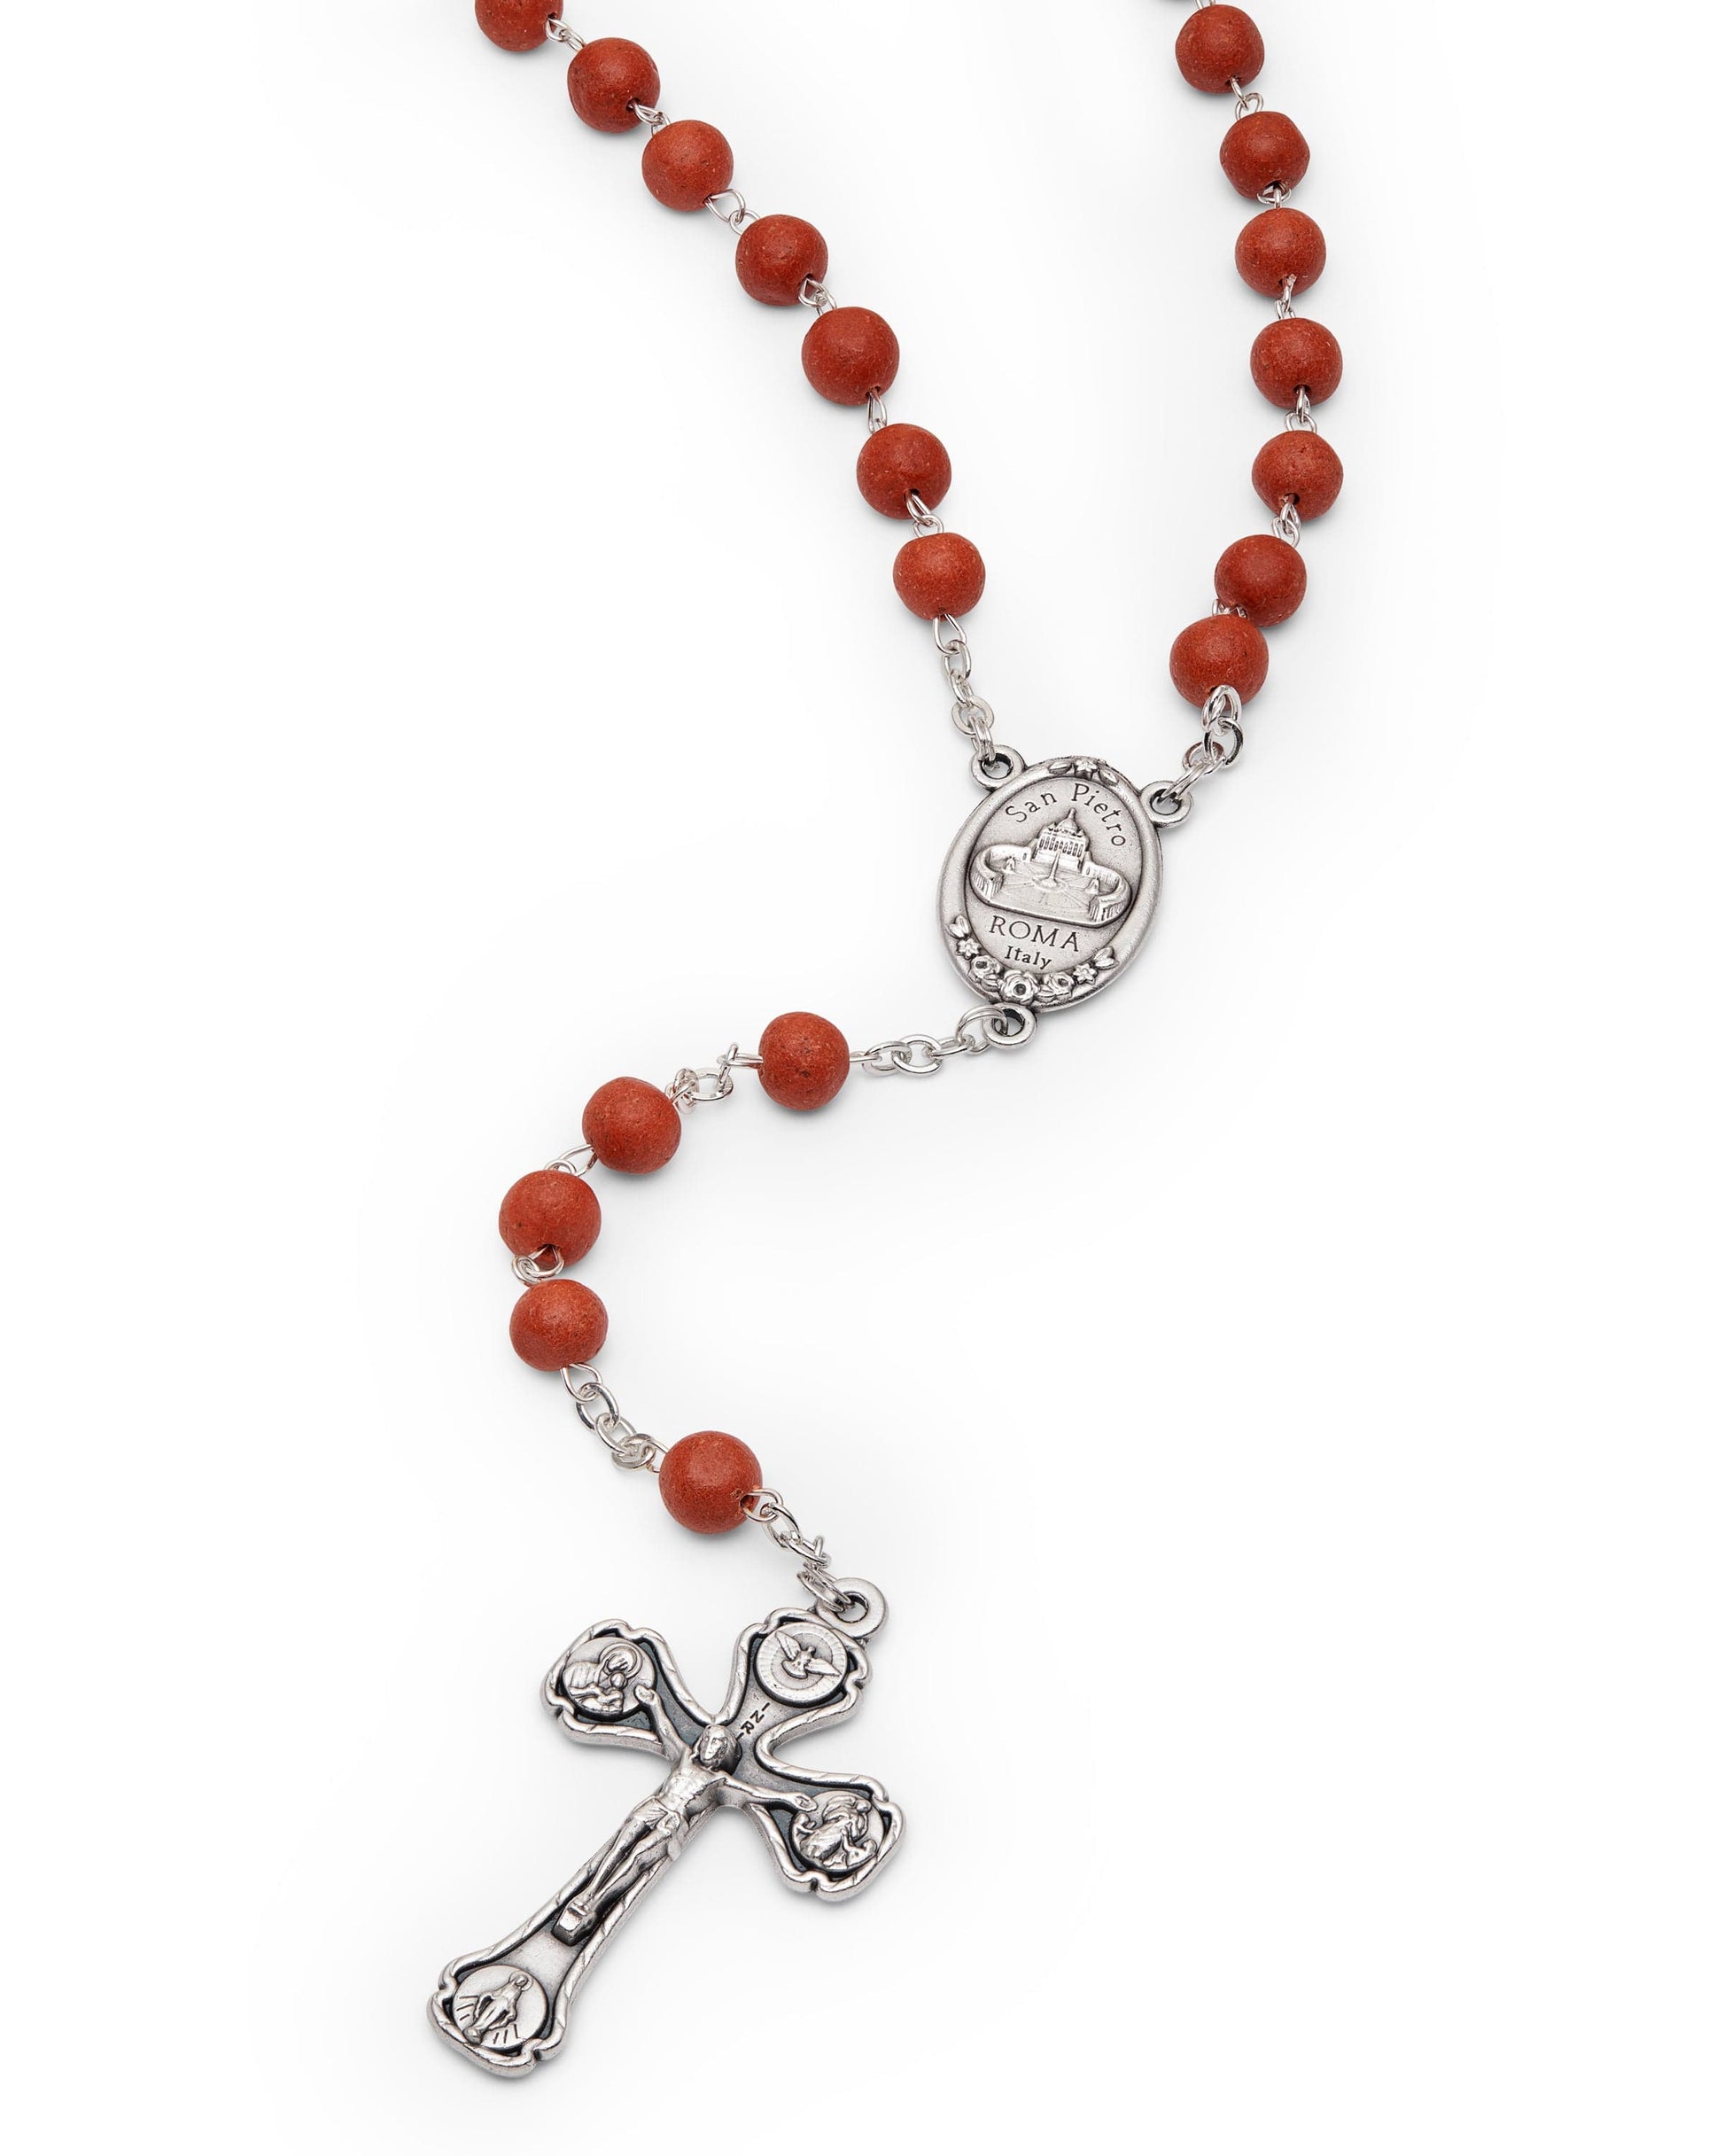 MONDO CATTOLICO Prayer Beads Rose Petals Rosary, The Original One